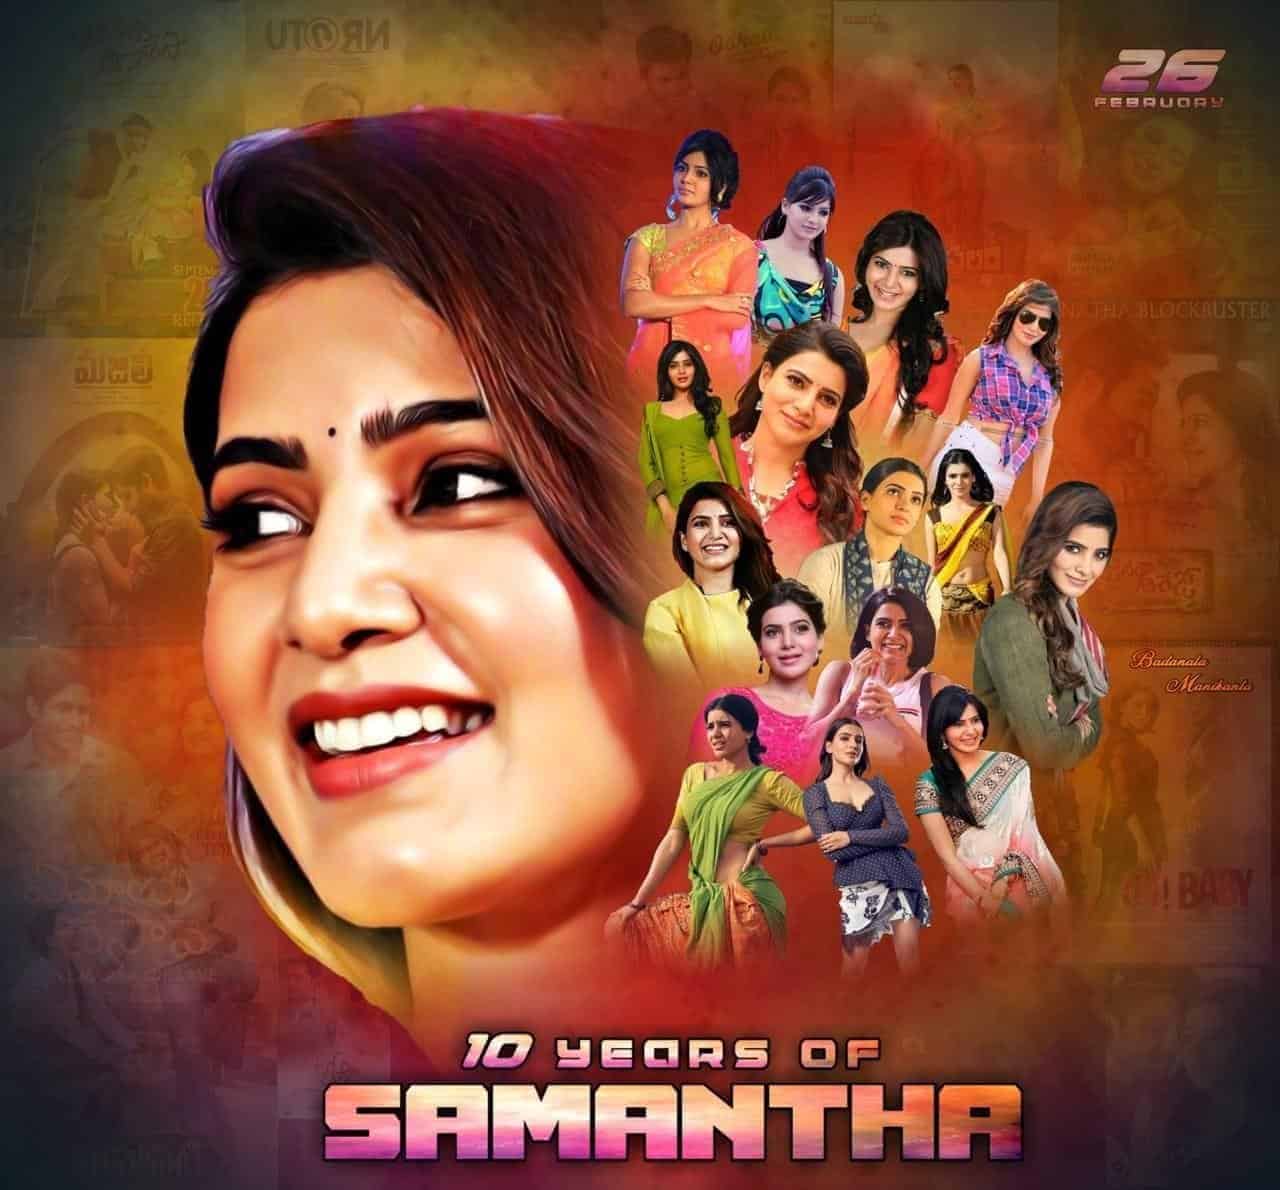 சமந்தா நடிப்புக்கு 10 வயதாம்